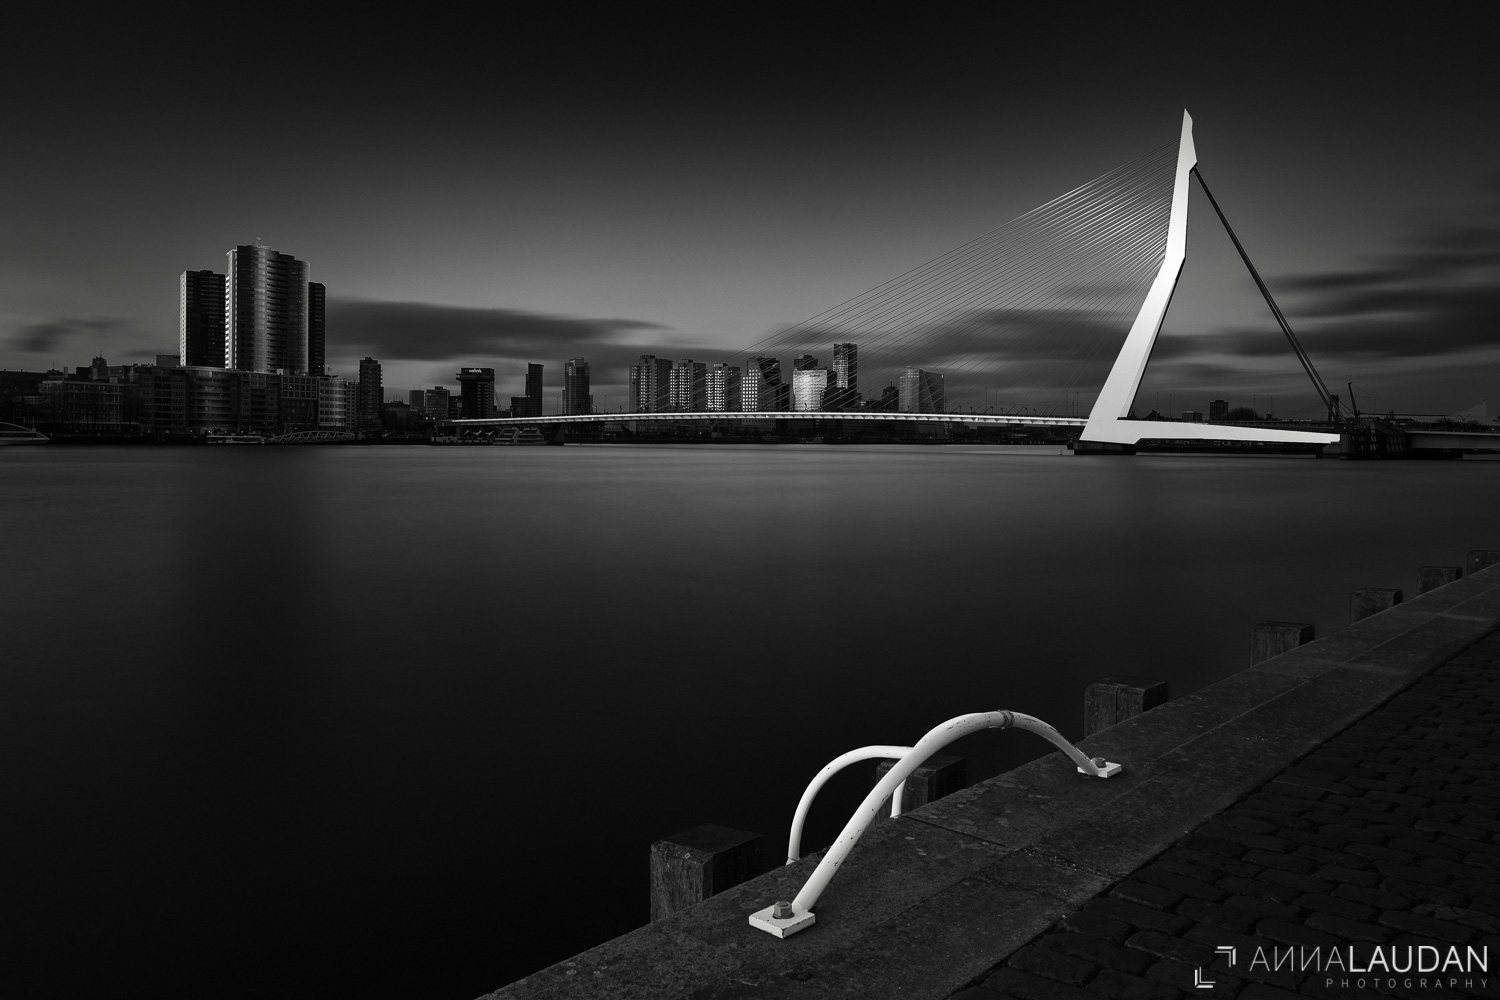 Schwarz-weiße Interpretation der Erasmusbrücke in Rotterdam